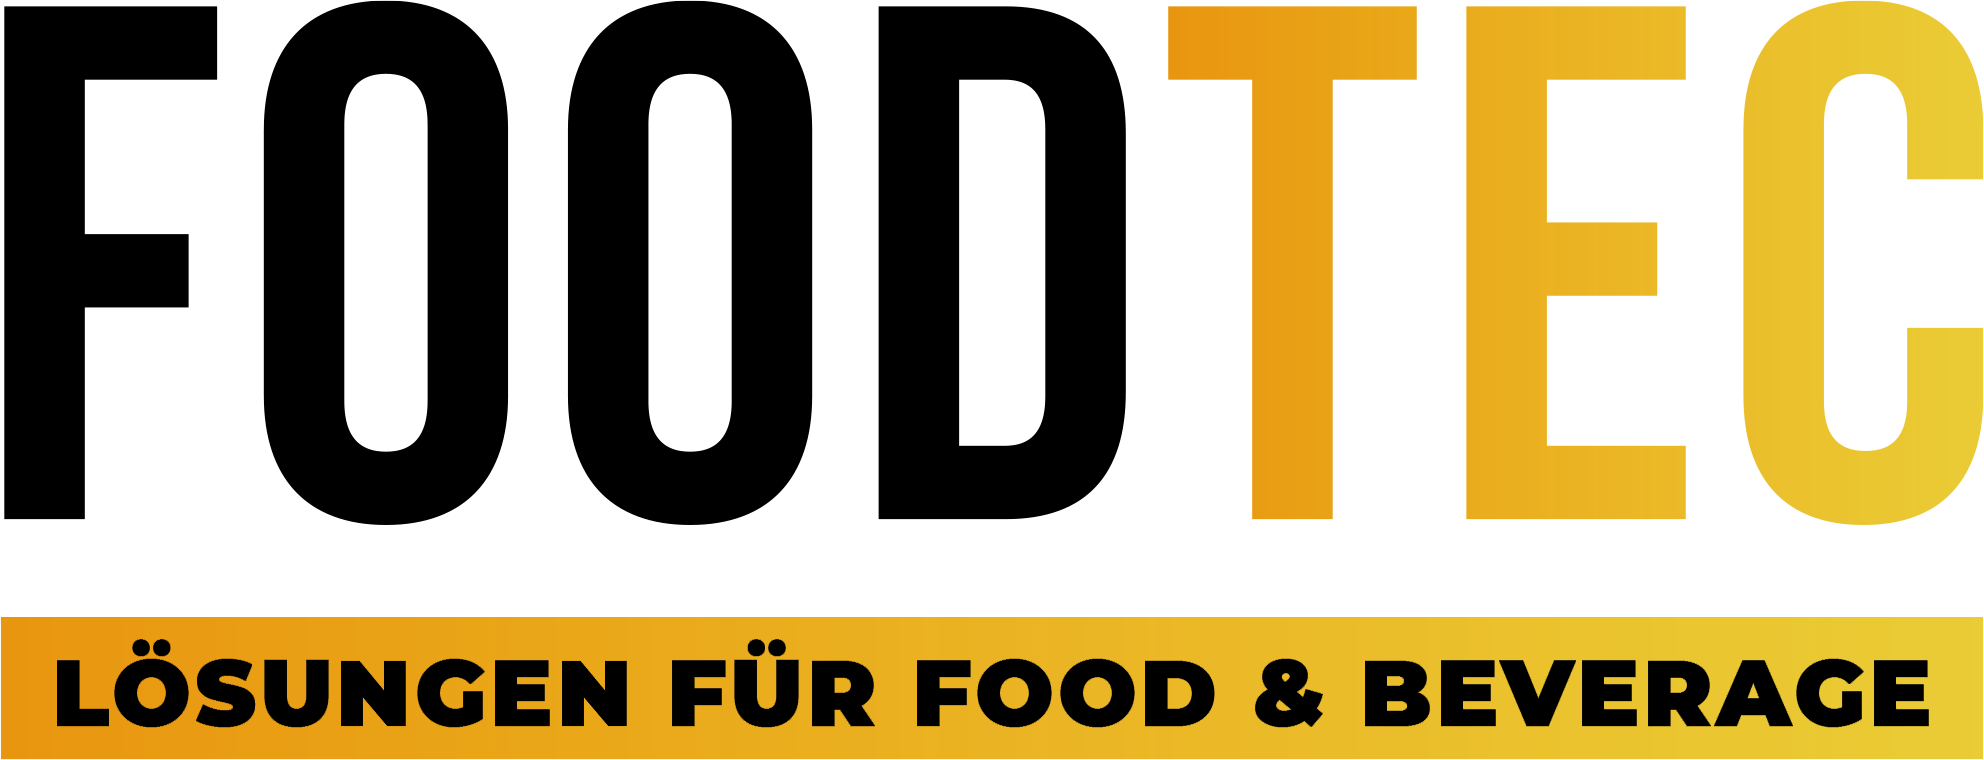 FoodTec logo